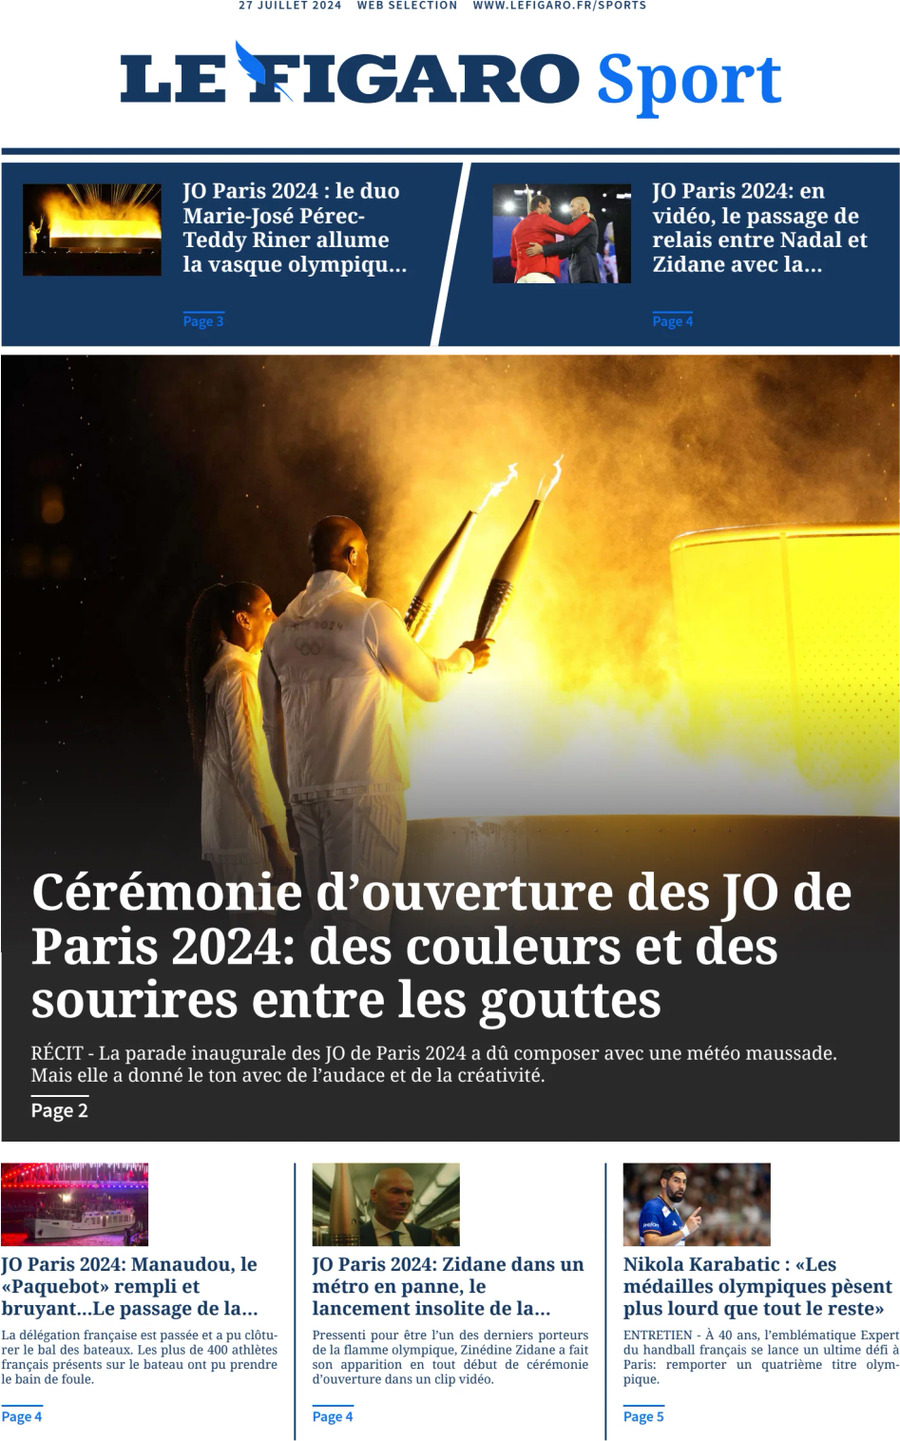 Prima Pagina Le Figaro SPORT 27/07/2024